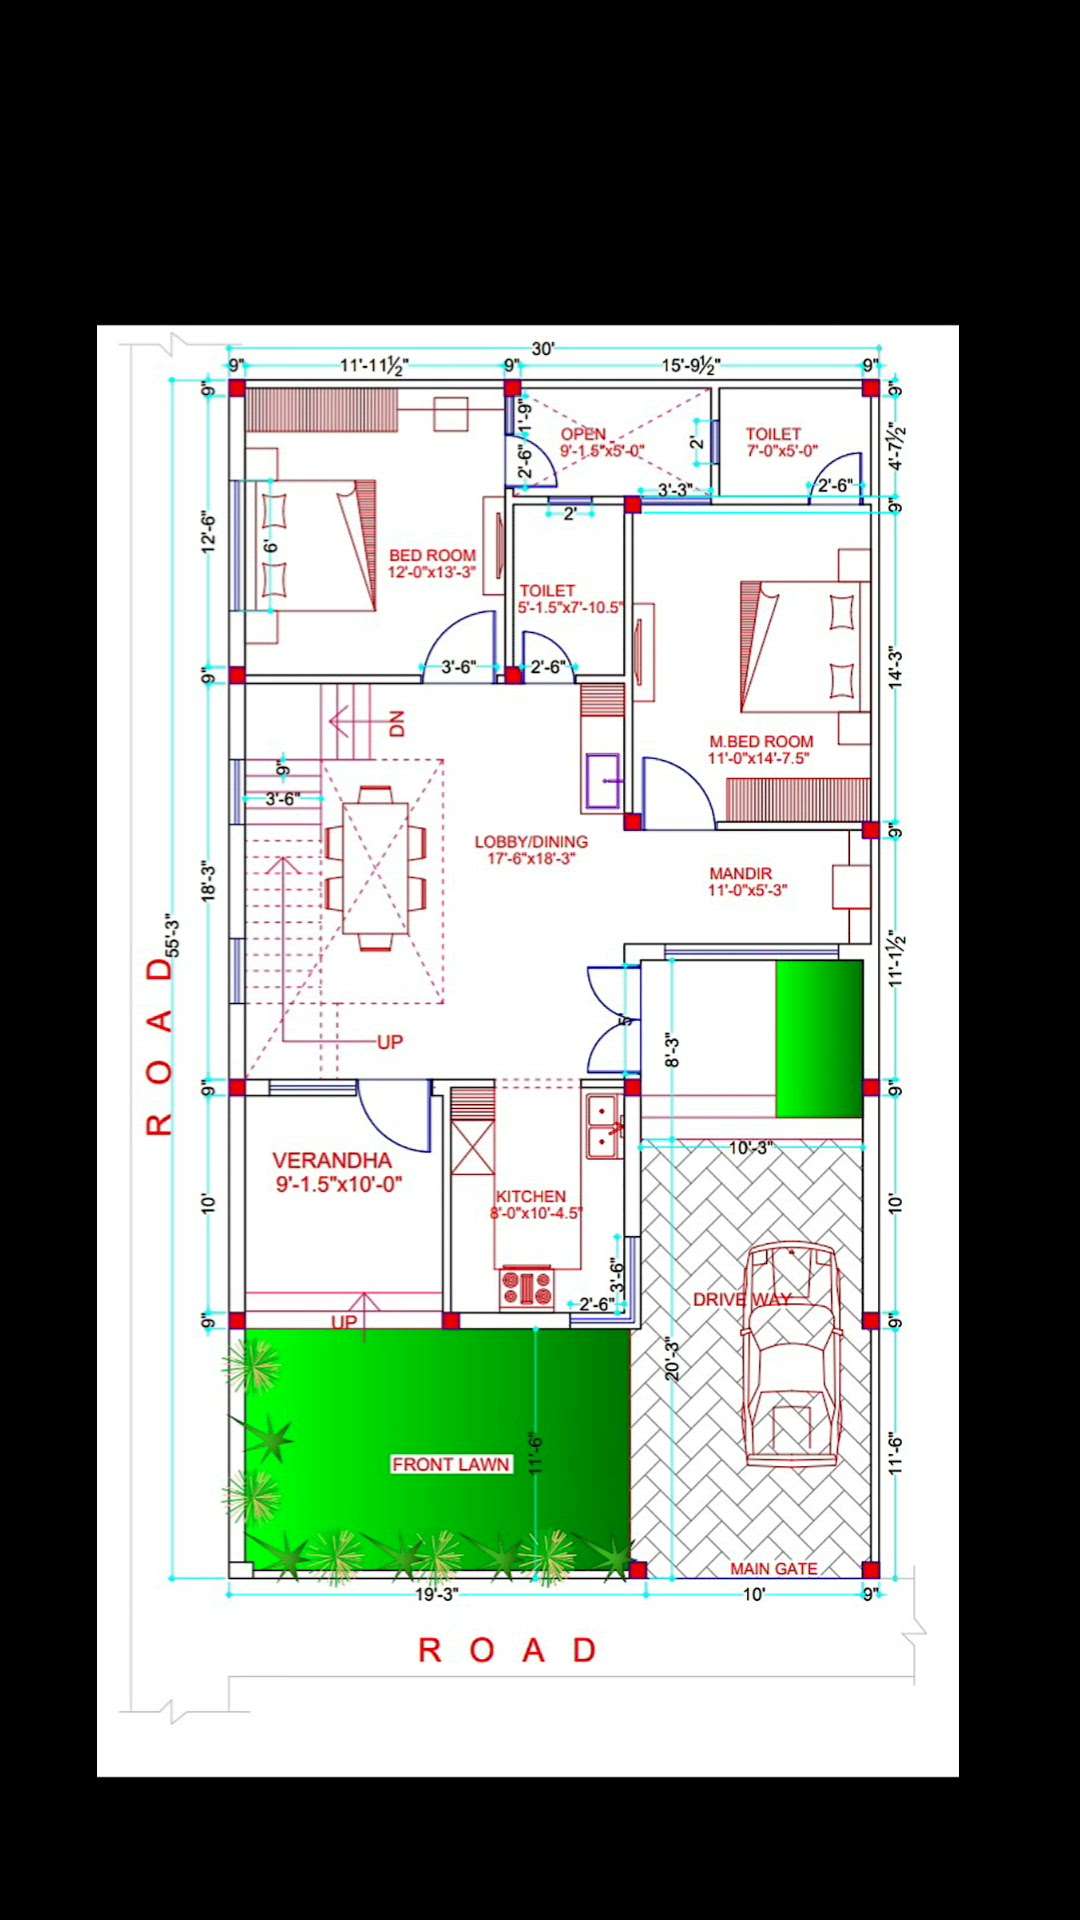 Floor Plan ( Naksha) ❤️
8077017254
 #InteriorDesigner  #Architectural&Interior  #FloorPlans  #WestFacingPlan  #planing  #nakshadesign  #nakshamaker  #naksha  #nakshacenter  #nakshaconstruction  #nakshathram  #nakshatra  #nakshadesignstudio  #nakshamp  #nakshaplan  #nakshaconstruction  #CivilEngineer  #civilcontractors  #HouseConstruction  #HouseDesigns  #constructionsite  #constructioncompany  #construction   #constructioncompany  #civilcontractors  #civilpracticalknowledge  #Delhi  #Delhihome  #gaziabad  #meerut  #gaziabad  #hapur  #Dehradun  #dehradoon  #agra  #mathura  #muzaffarnagar  #bhagpat  #haridwar  #roorkee  #gurugram  #dhar  #jaipur  #rajasthan  #chandigarh  #Haryana  #bhopal  #Lucknow  #kanpur  #meerutcity  #bareilly  #alloverindia  #LUXURY_INTERIOR